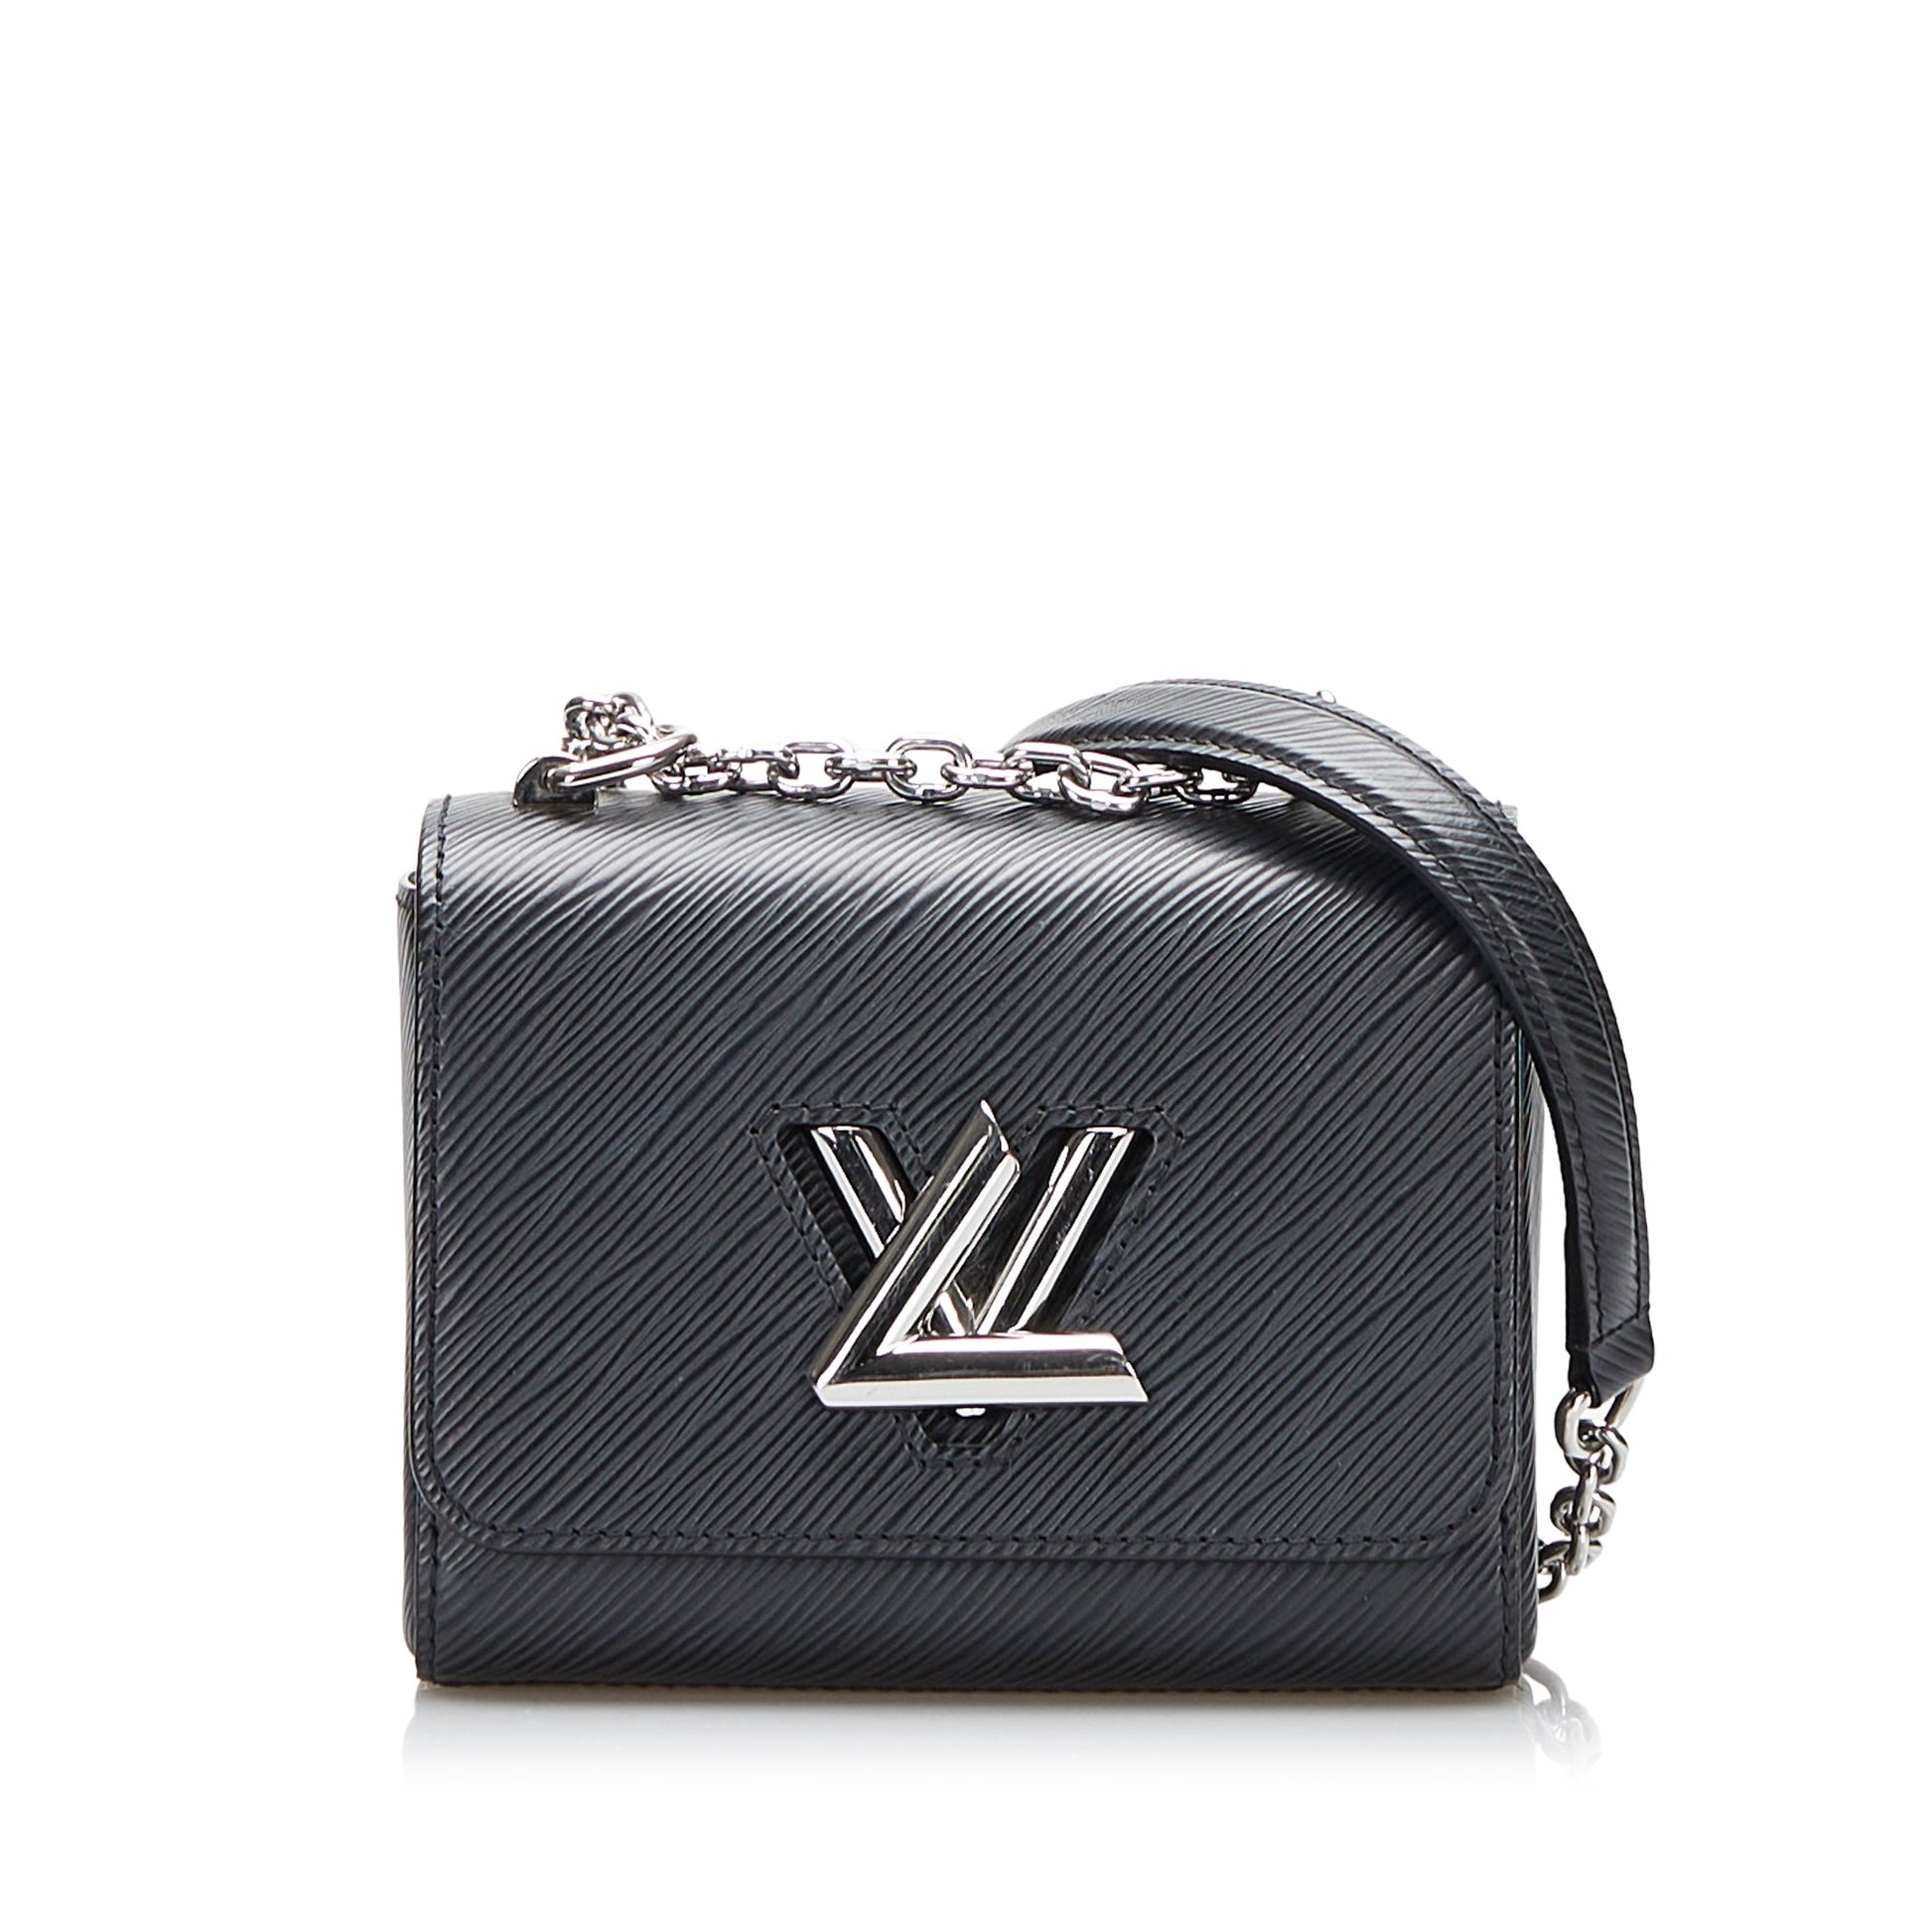 Louis Vuitton, Epi Leather Twist Series